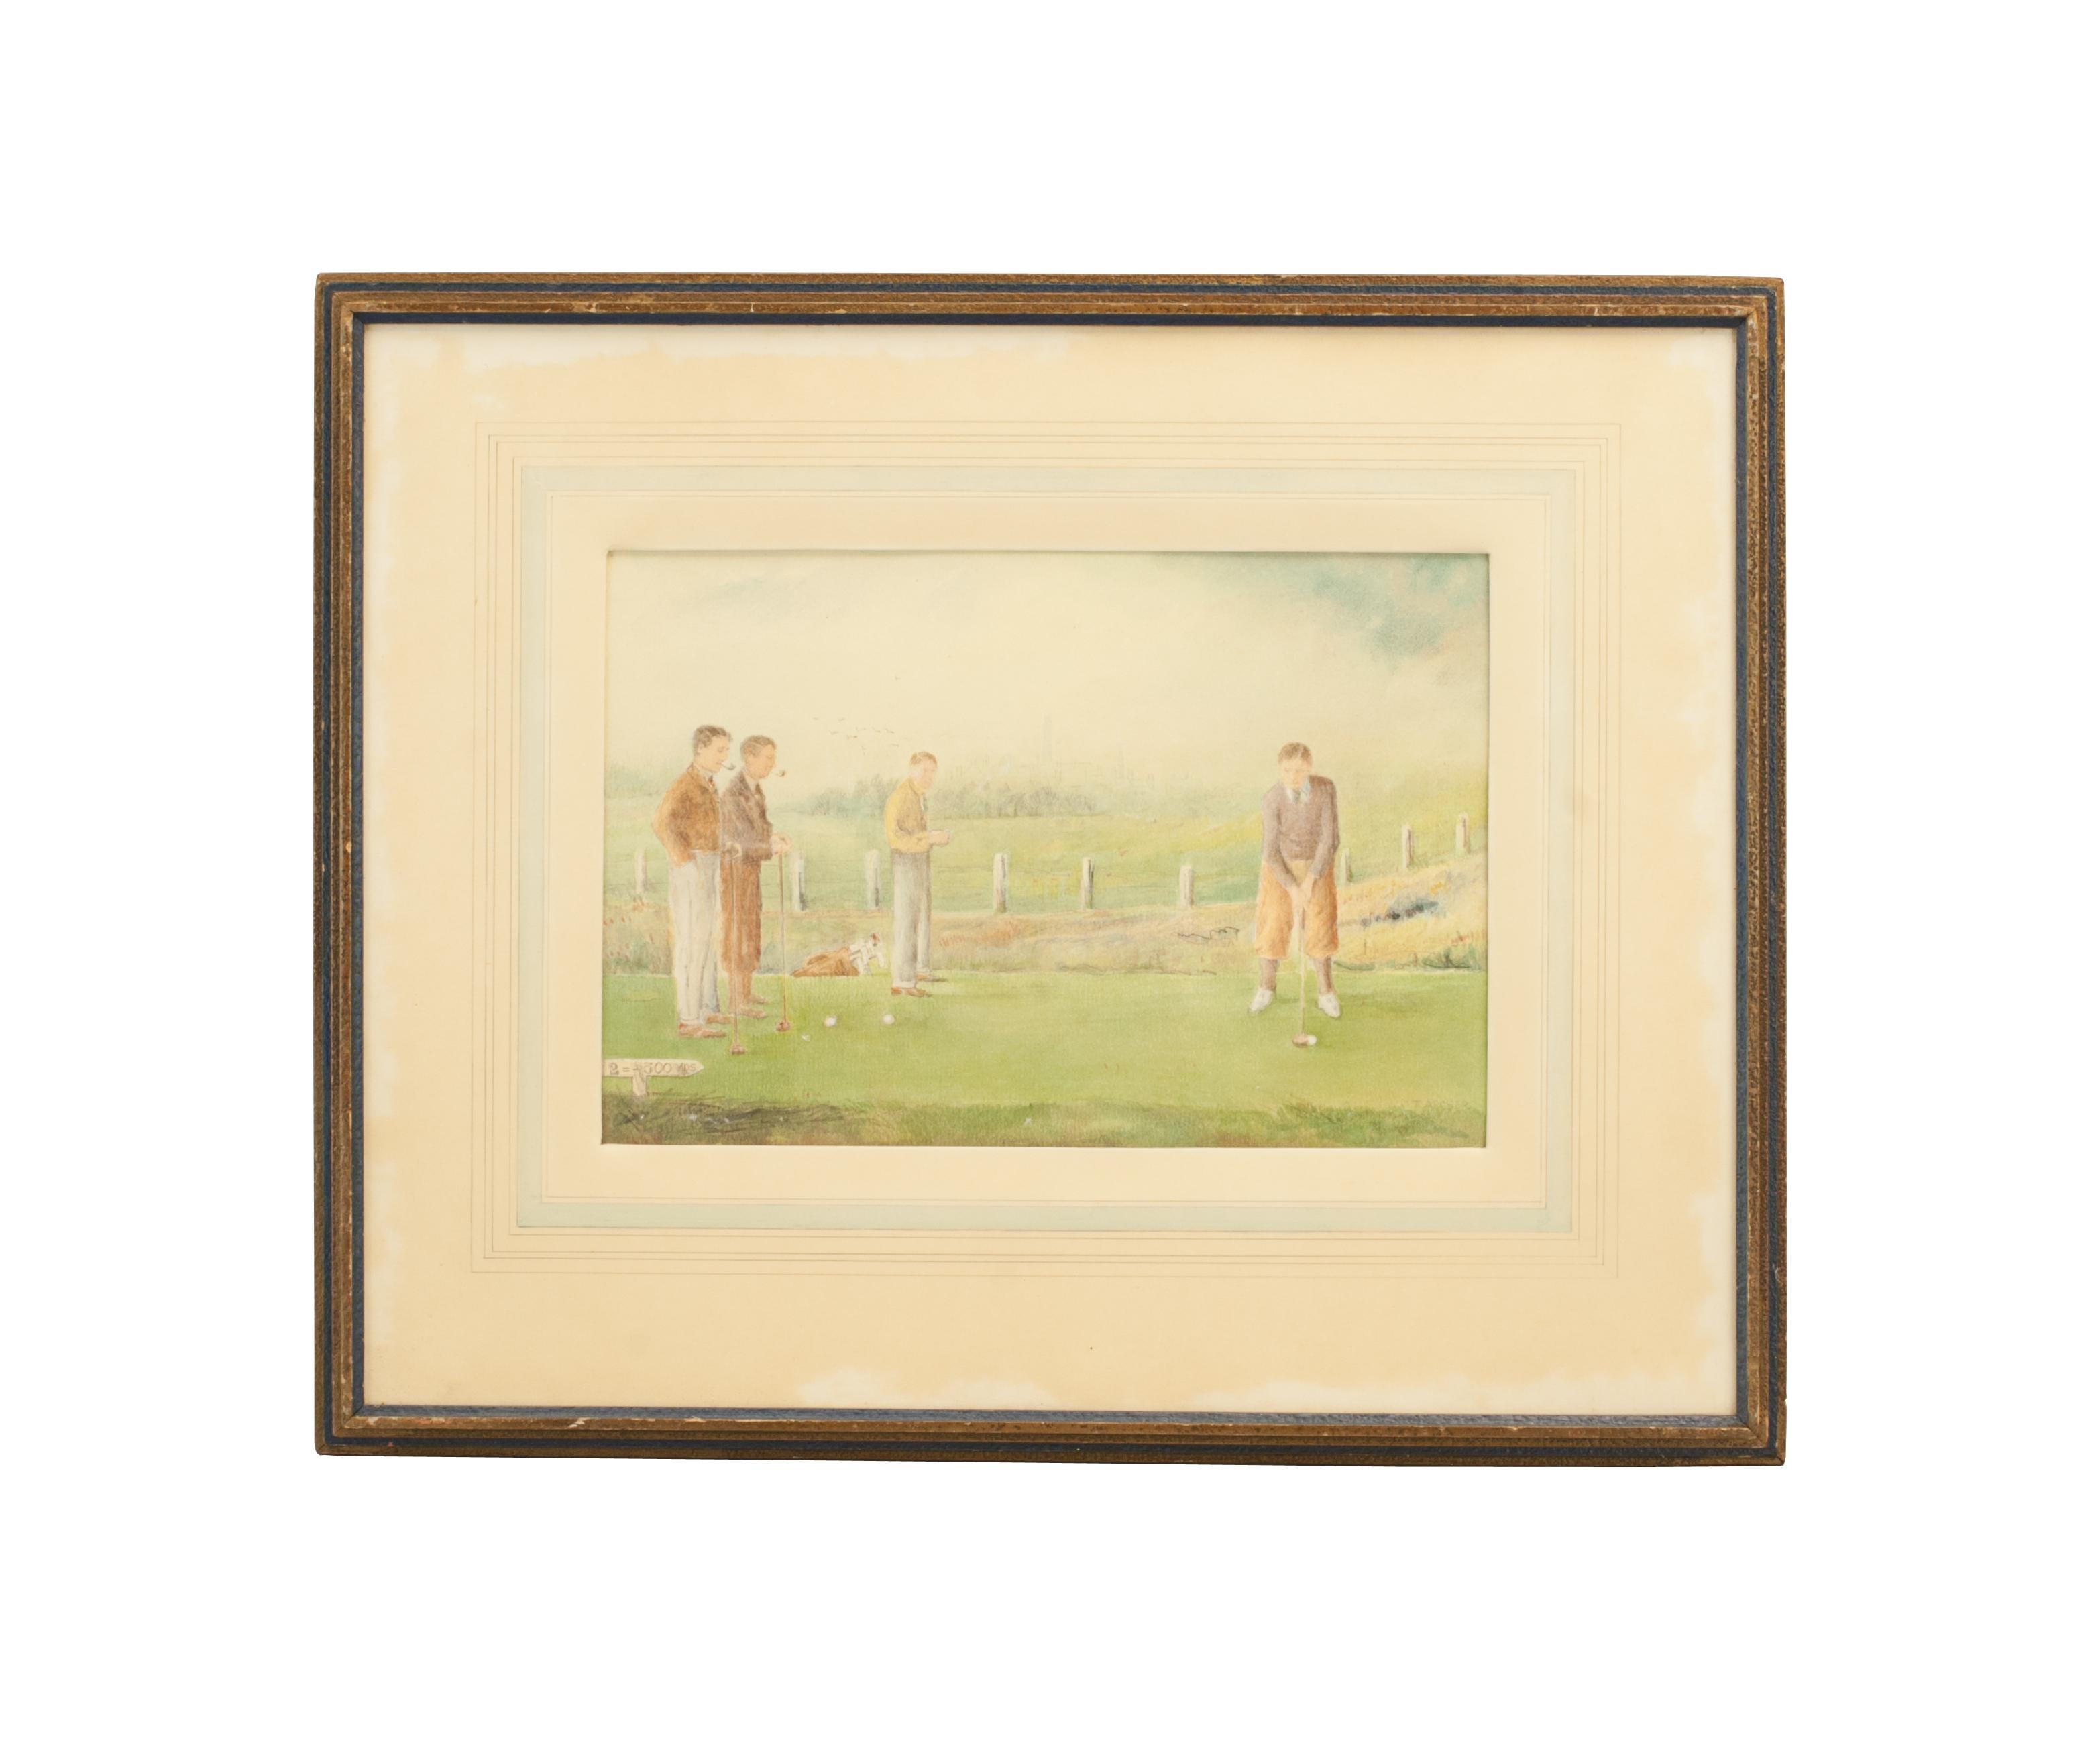 Bilston Golf Club Aquarelle, H.E. Lewis au volant.
Charmante aquarelle de golf représentant H. Lewis (le professionnel du club de golf de Bilston) au volant depuis le deuxième tee. Lewis est observé par ses trois compagnons de jeu en route vers le